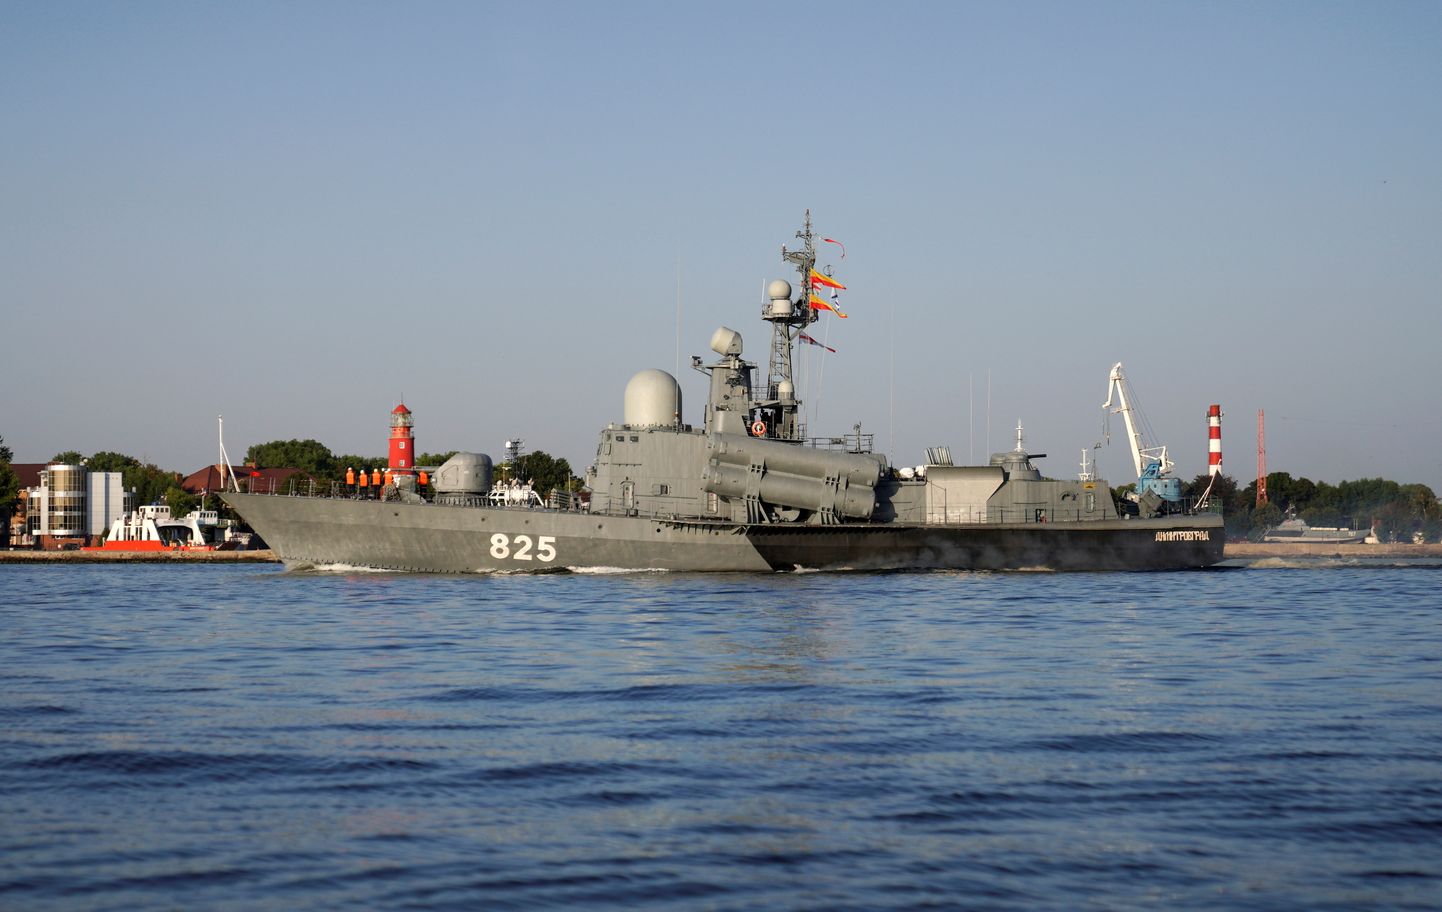 Vene sõjalaev Dimitrovgrad osalemas Venemaa mereväe Balti laevastiku poolt korraldatud mereväeõppustel Zapad-2021 9. septembril 2021. aastal.